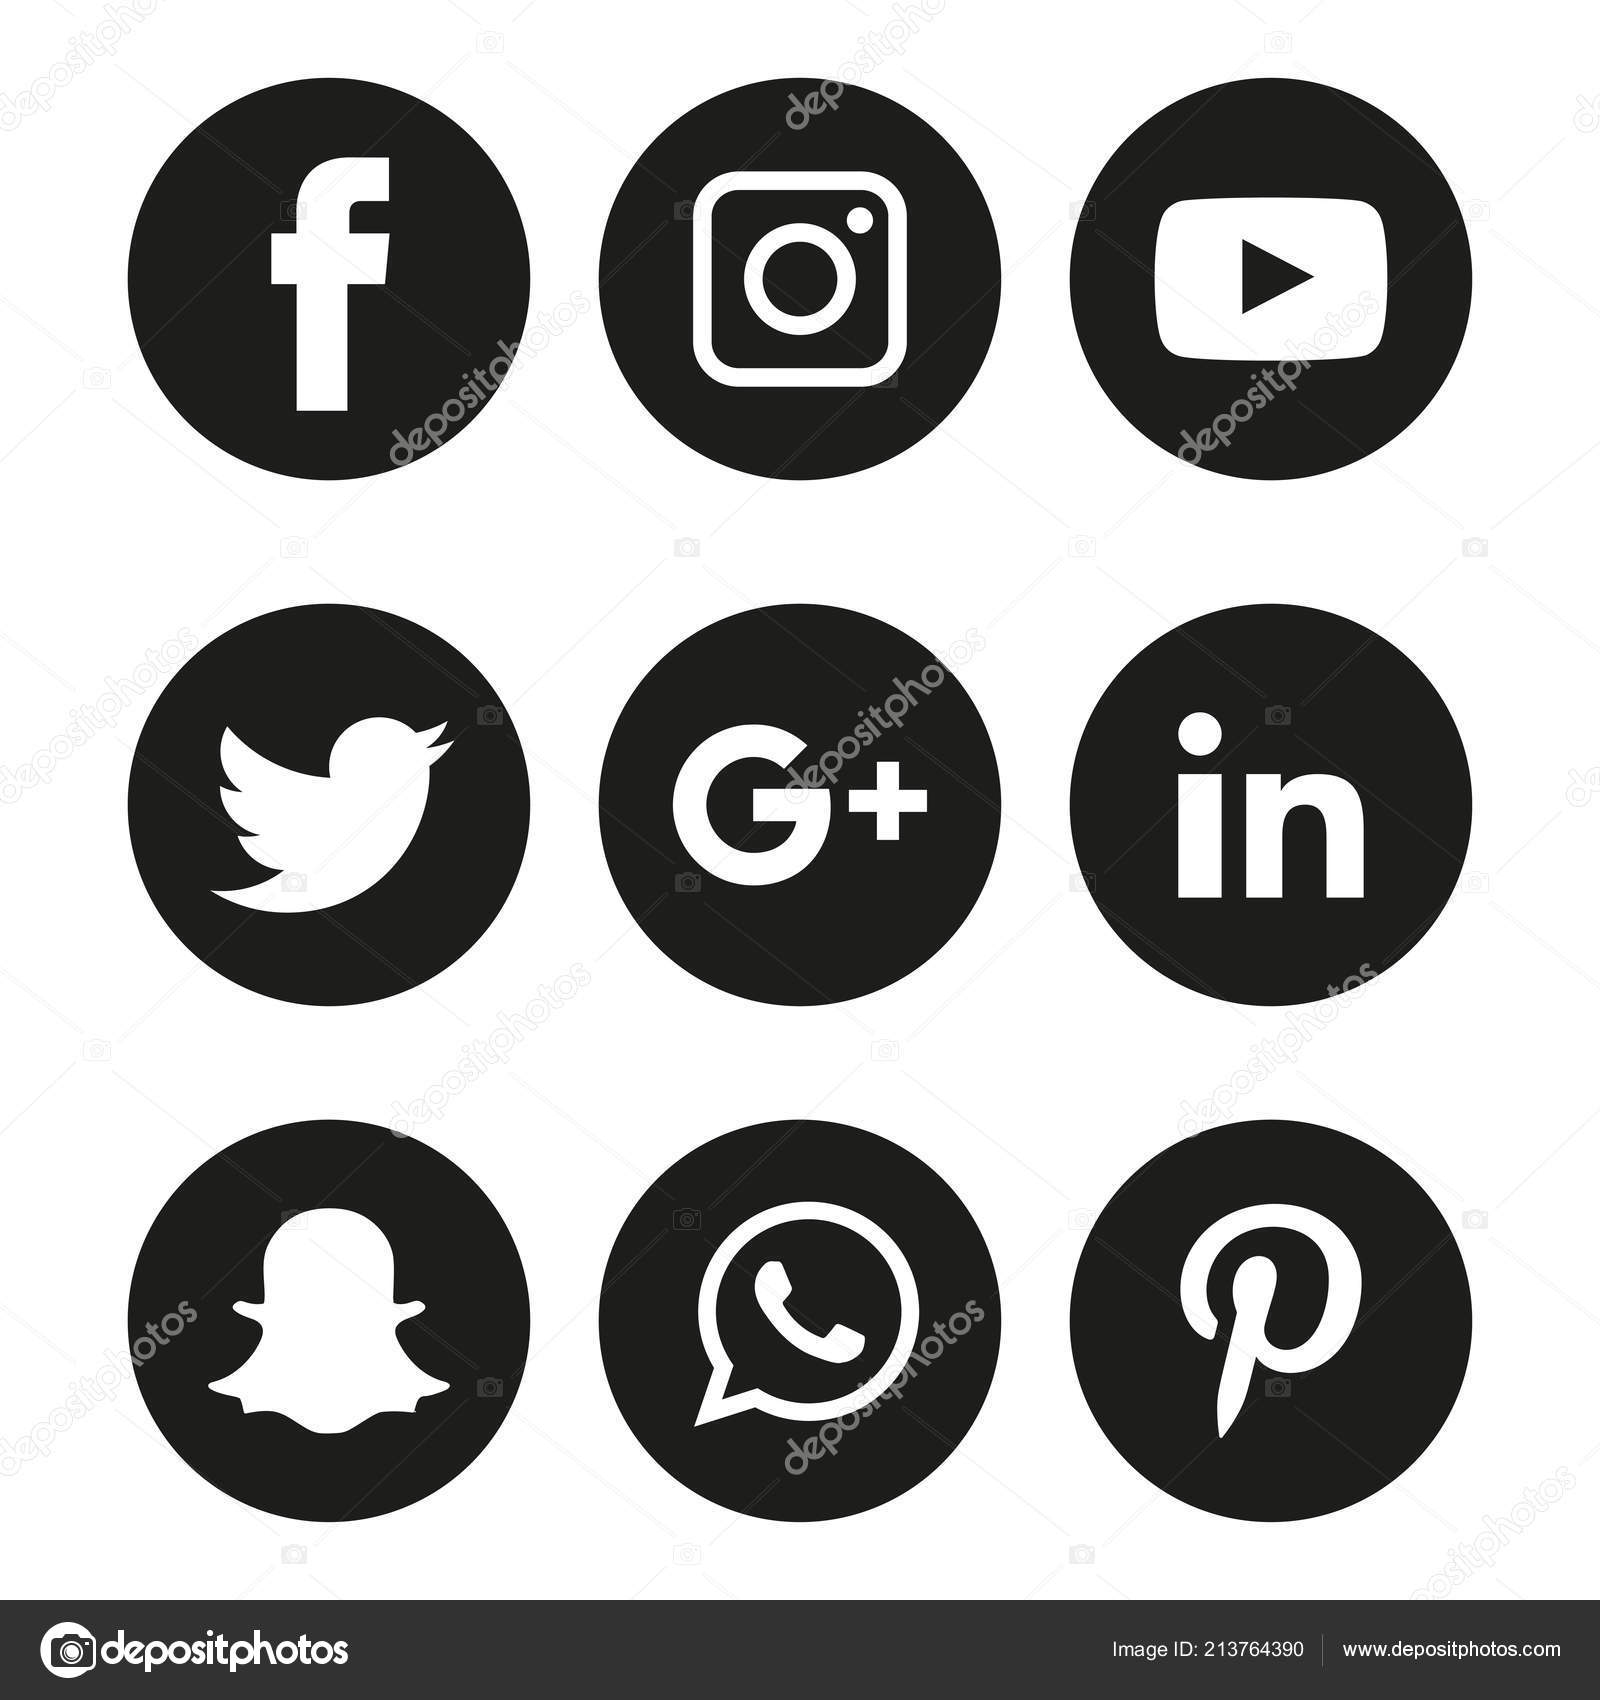 Facebook Instagram Logo Black And White Black White Social Media